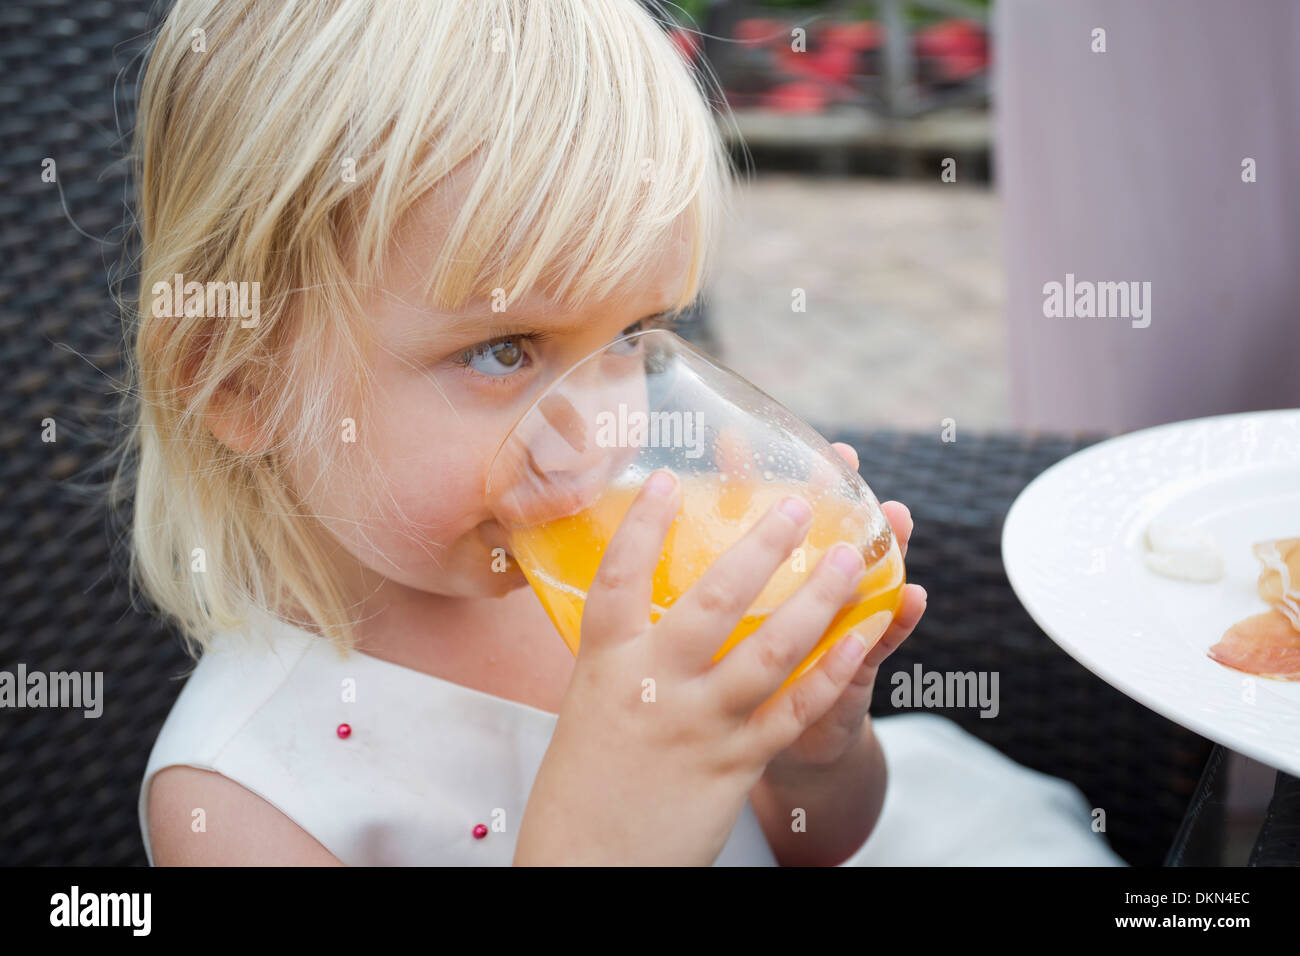 Jolie petite fille assise à l'extérieur de boire du jus Banque D'Images